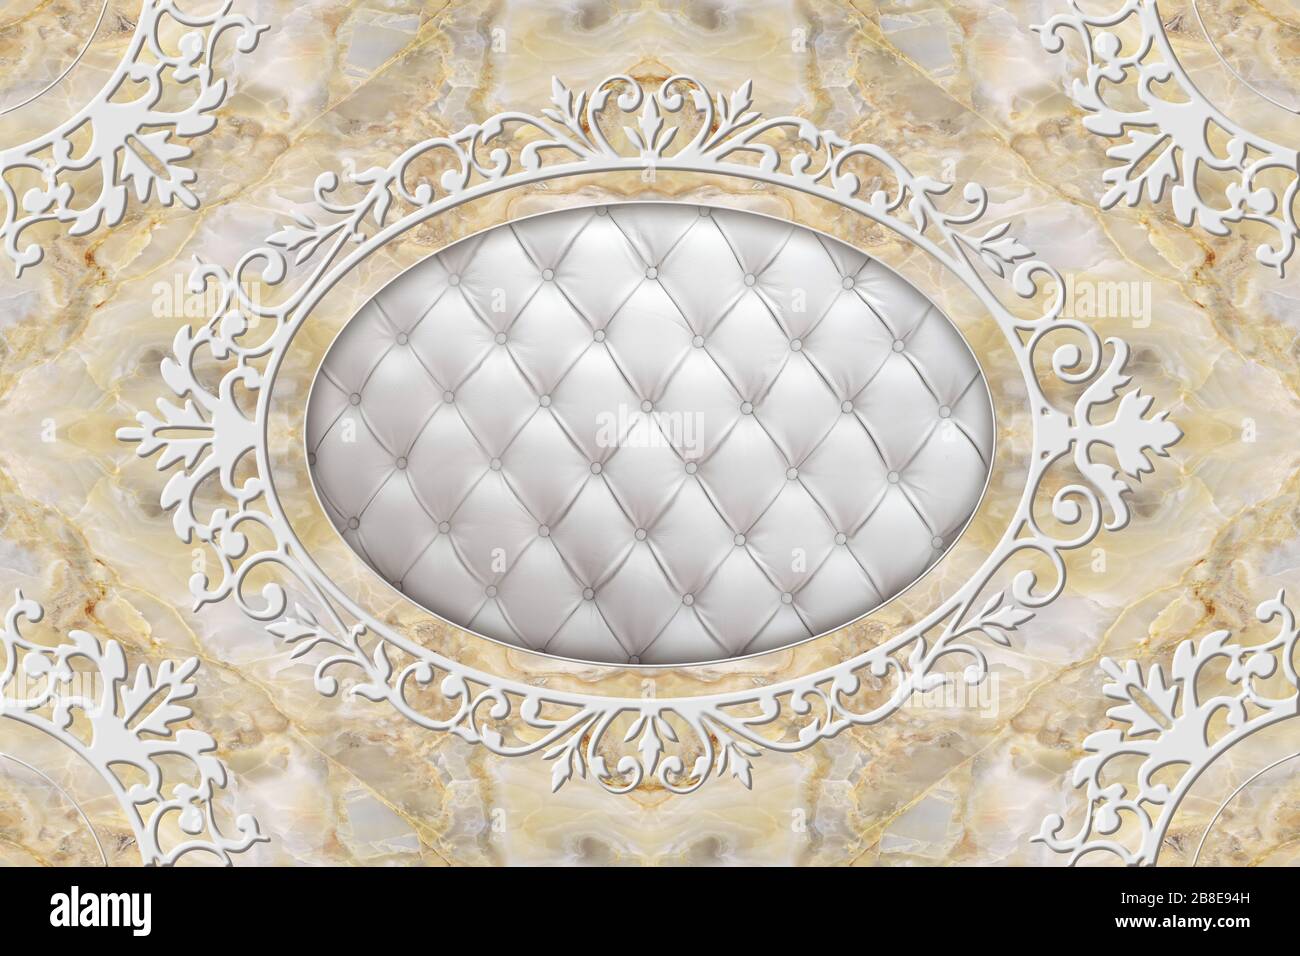 Titel 3D-Decke, stuckierter Dekorrahmen, gestepptes Leder in der Mitte auf Marmorhintergrund. 3D-Hintergrundbild. Stockfoto